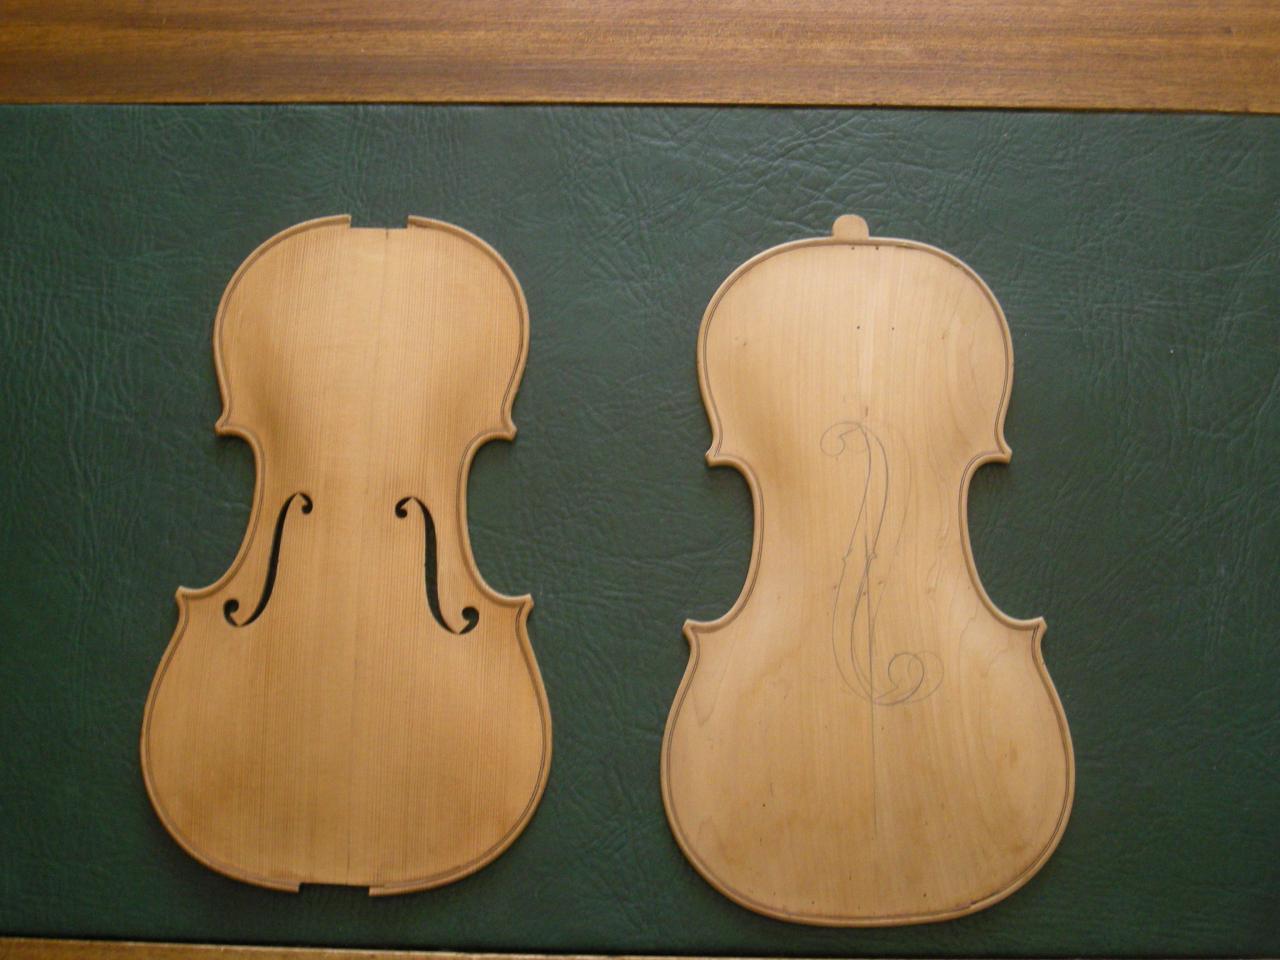 Table d'harmonie et fond de violon. Pierre Voiry années 40